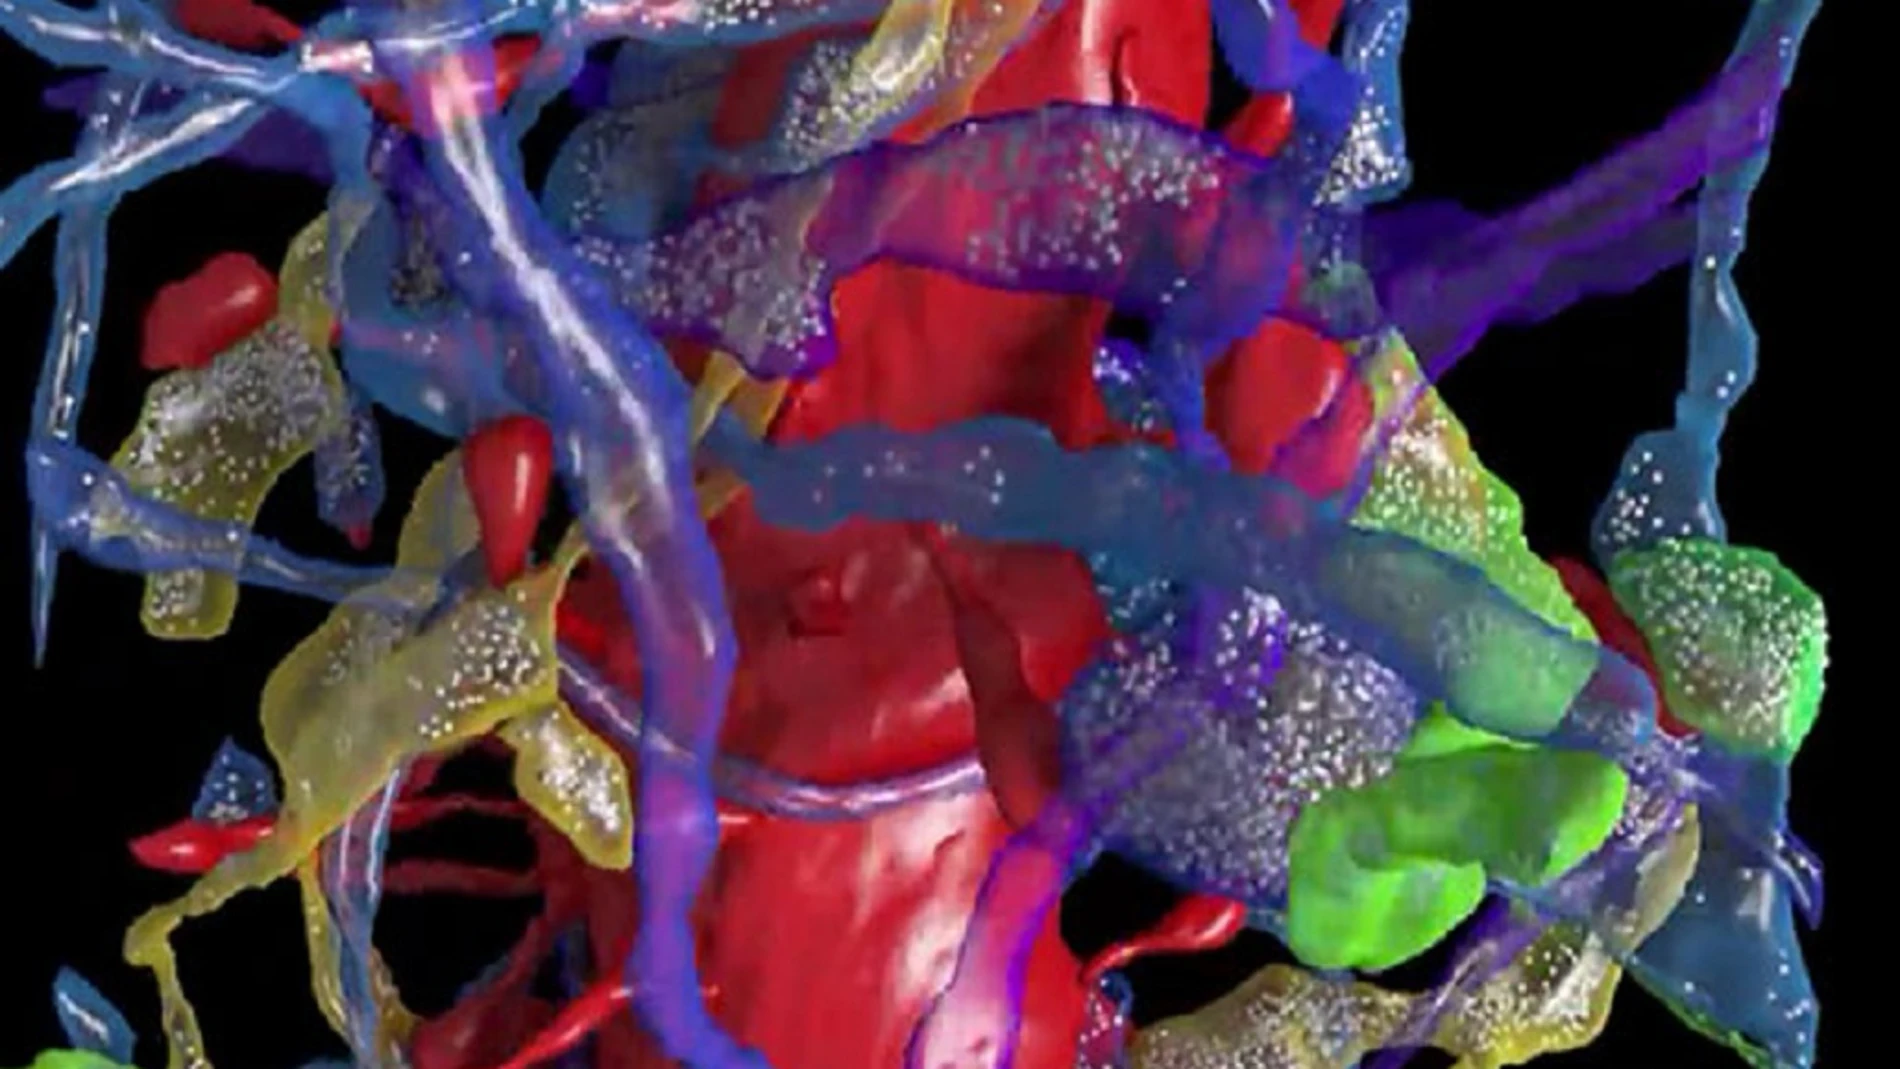 Las imágenes producidas por el equipo de Lichtman muestran una enorme densidad en las conexiones neuronales